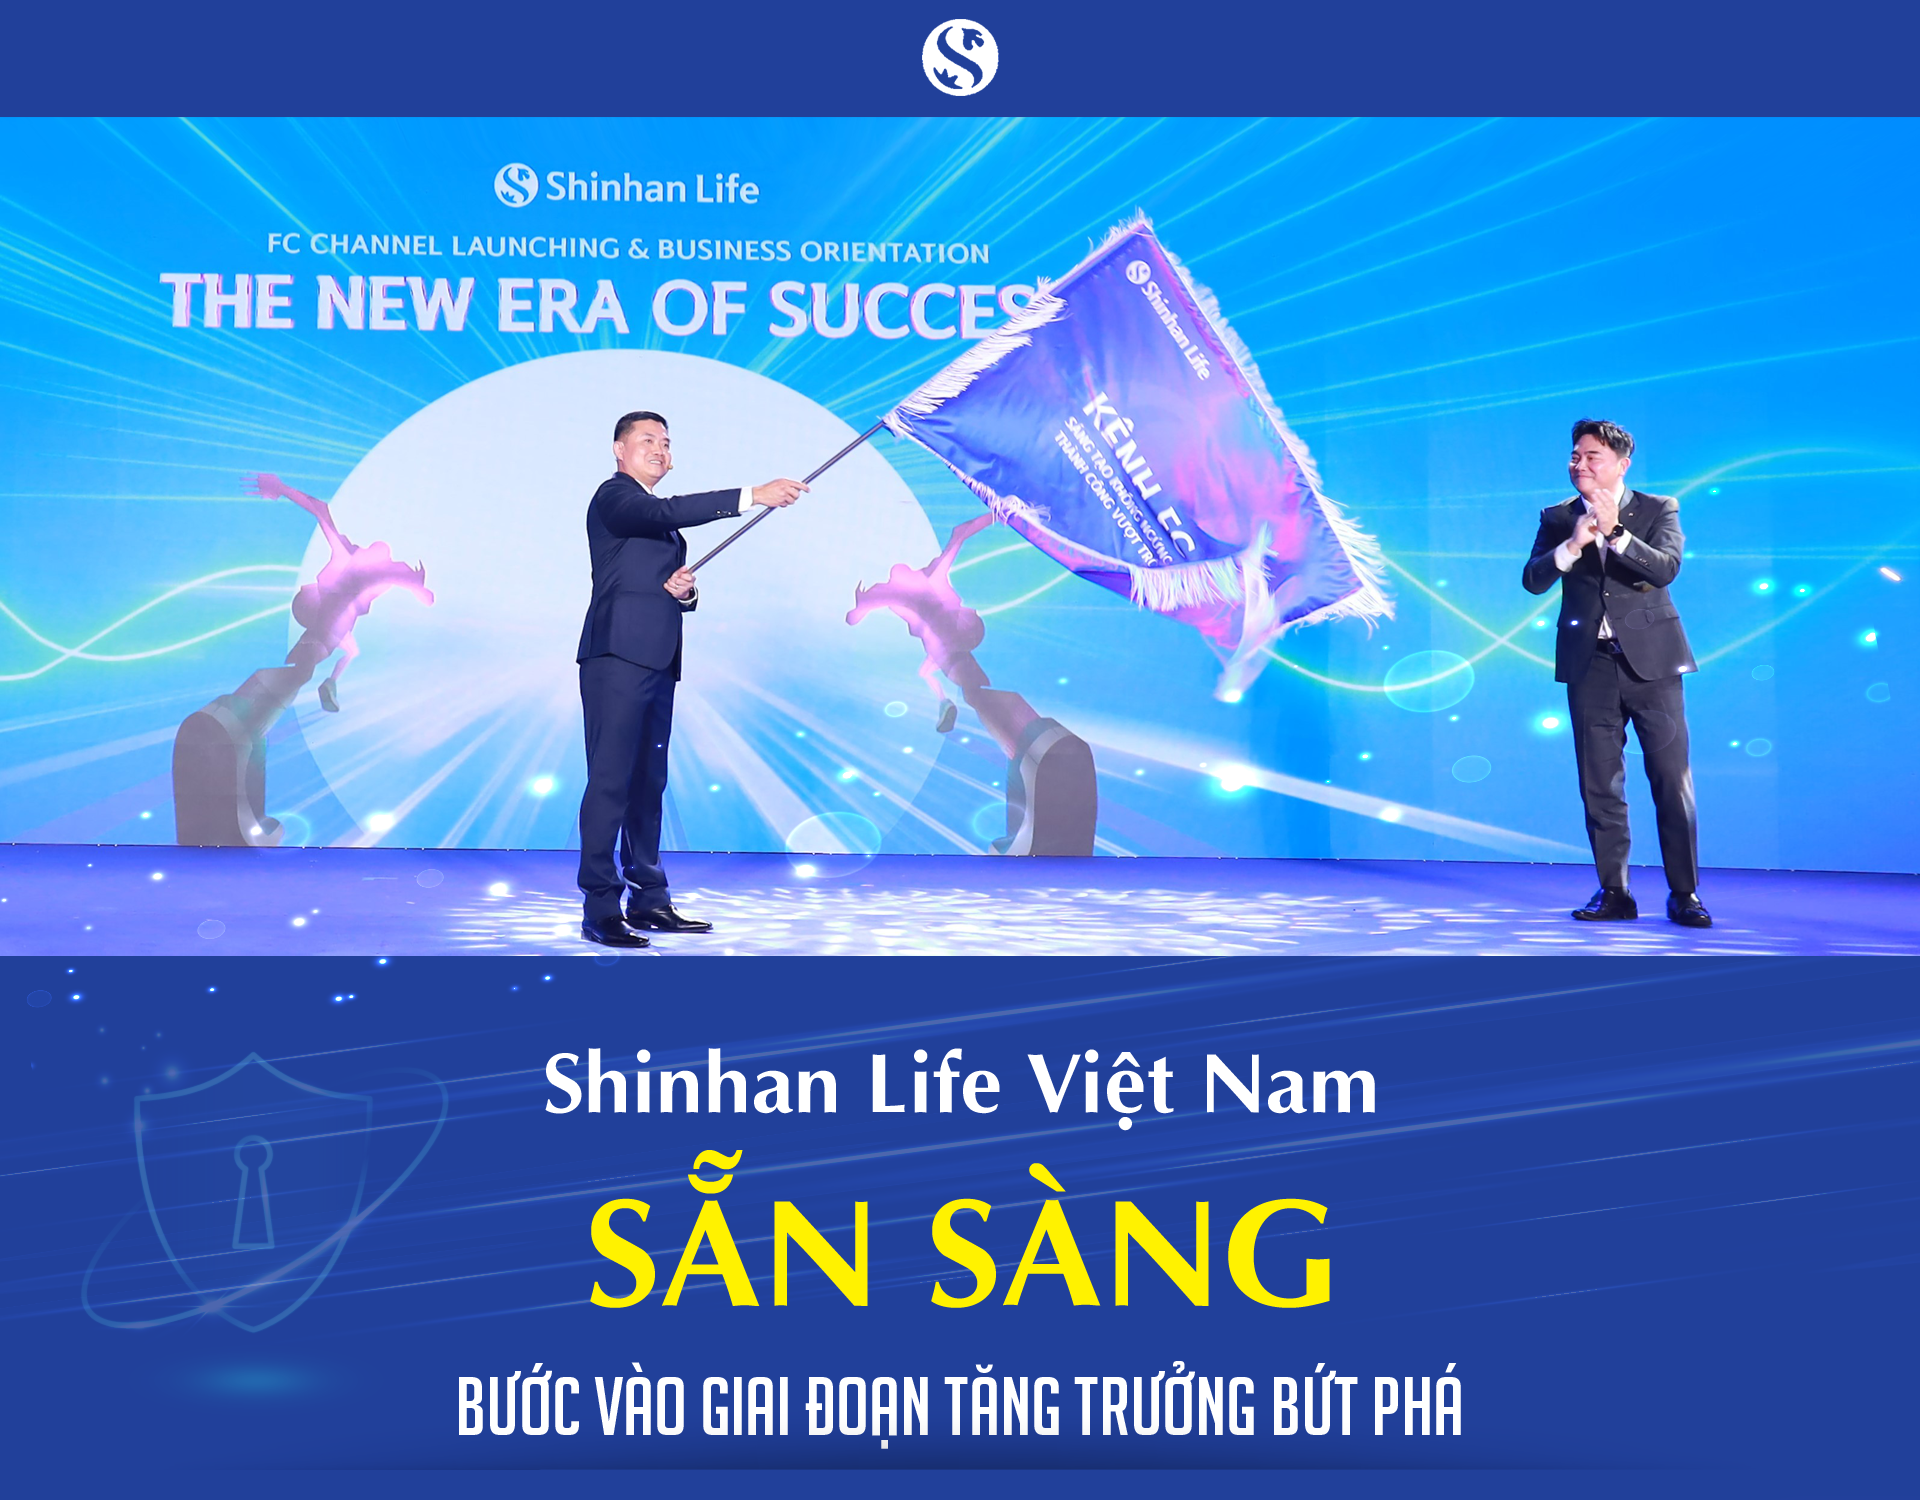 Shinhan Life Việt Nam sẵn sàng bước vào giai đoạn tăng trưởng bứt phá - Ảnh 1